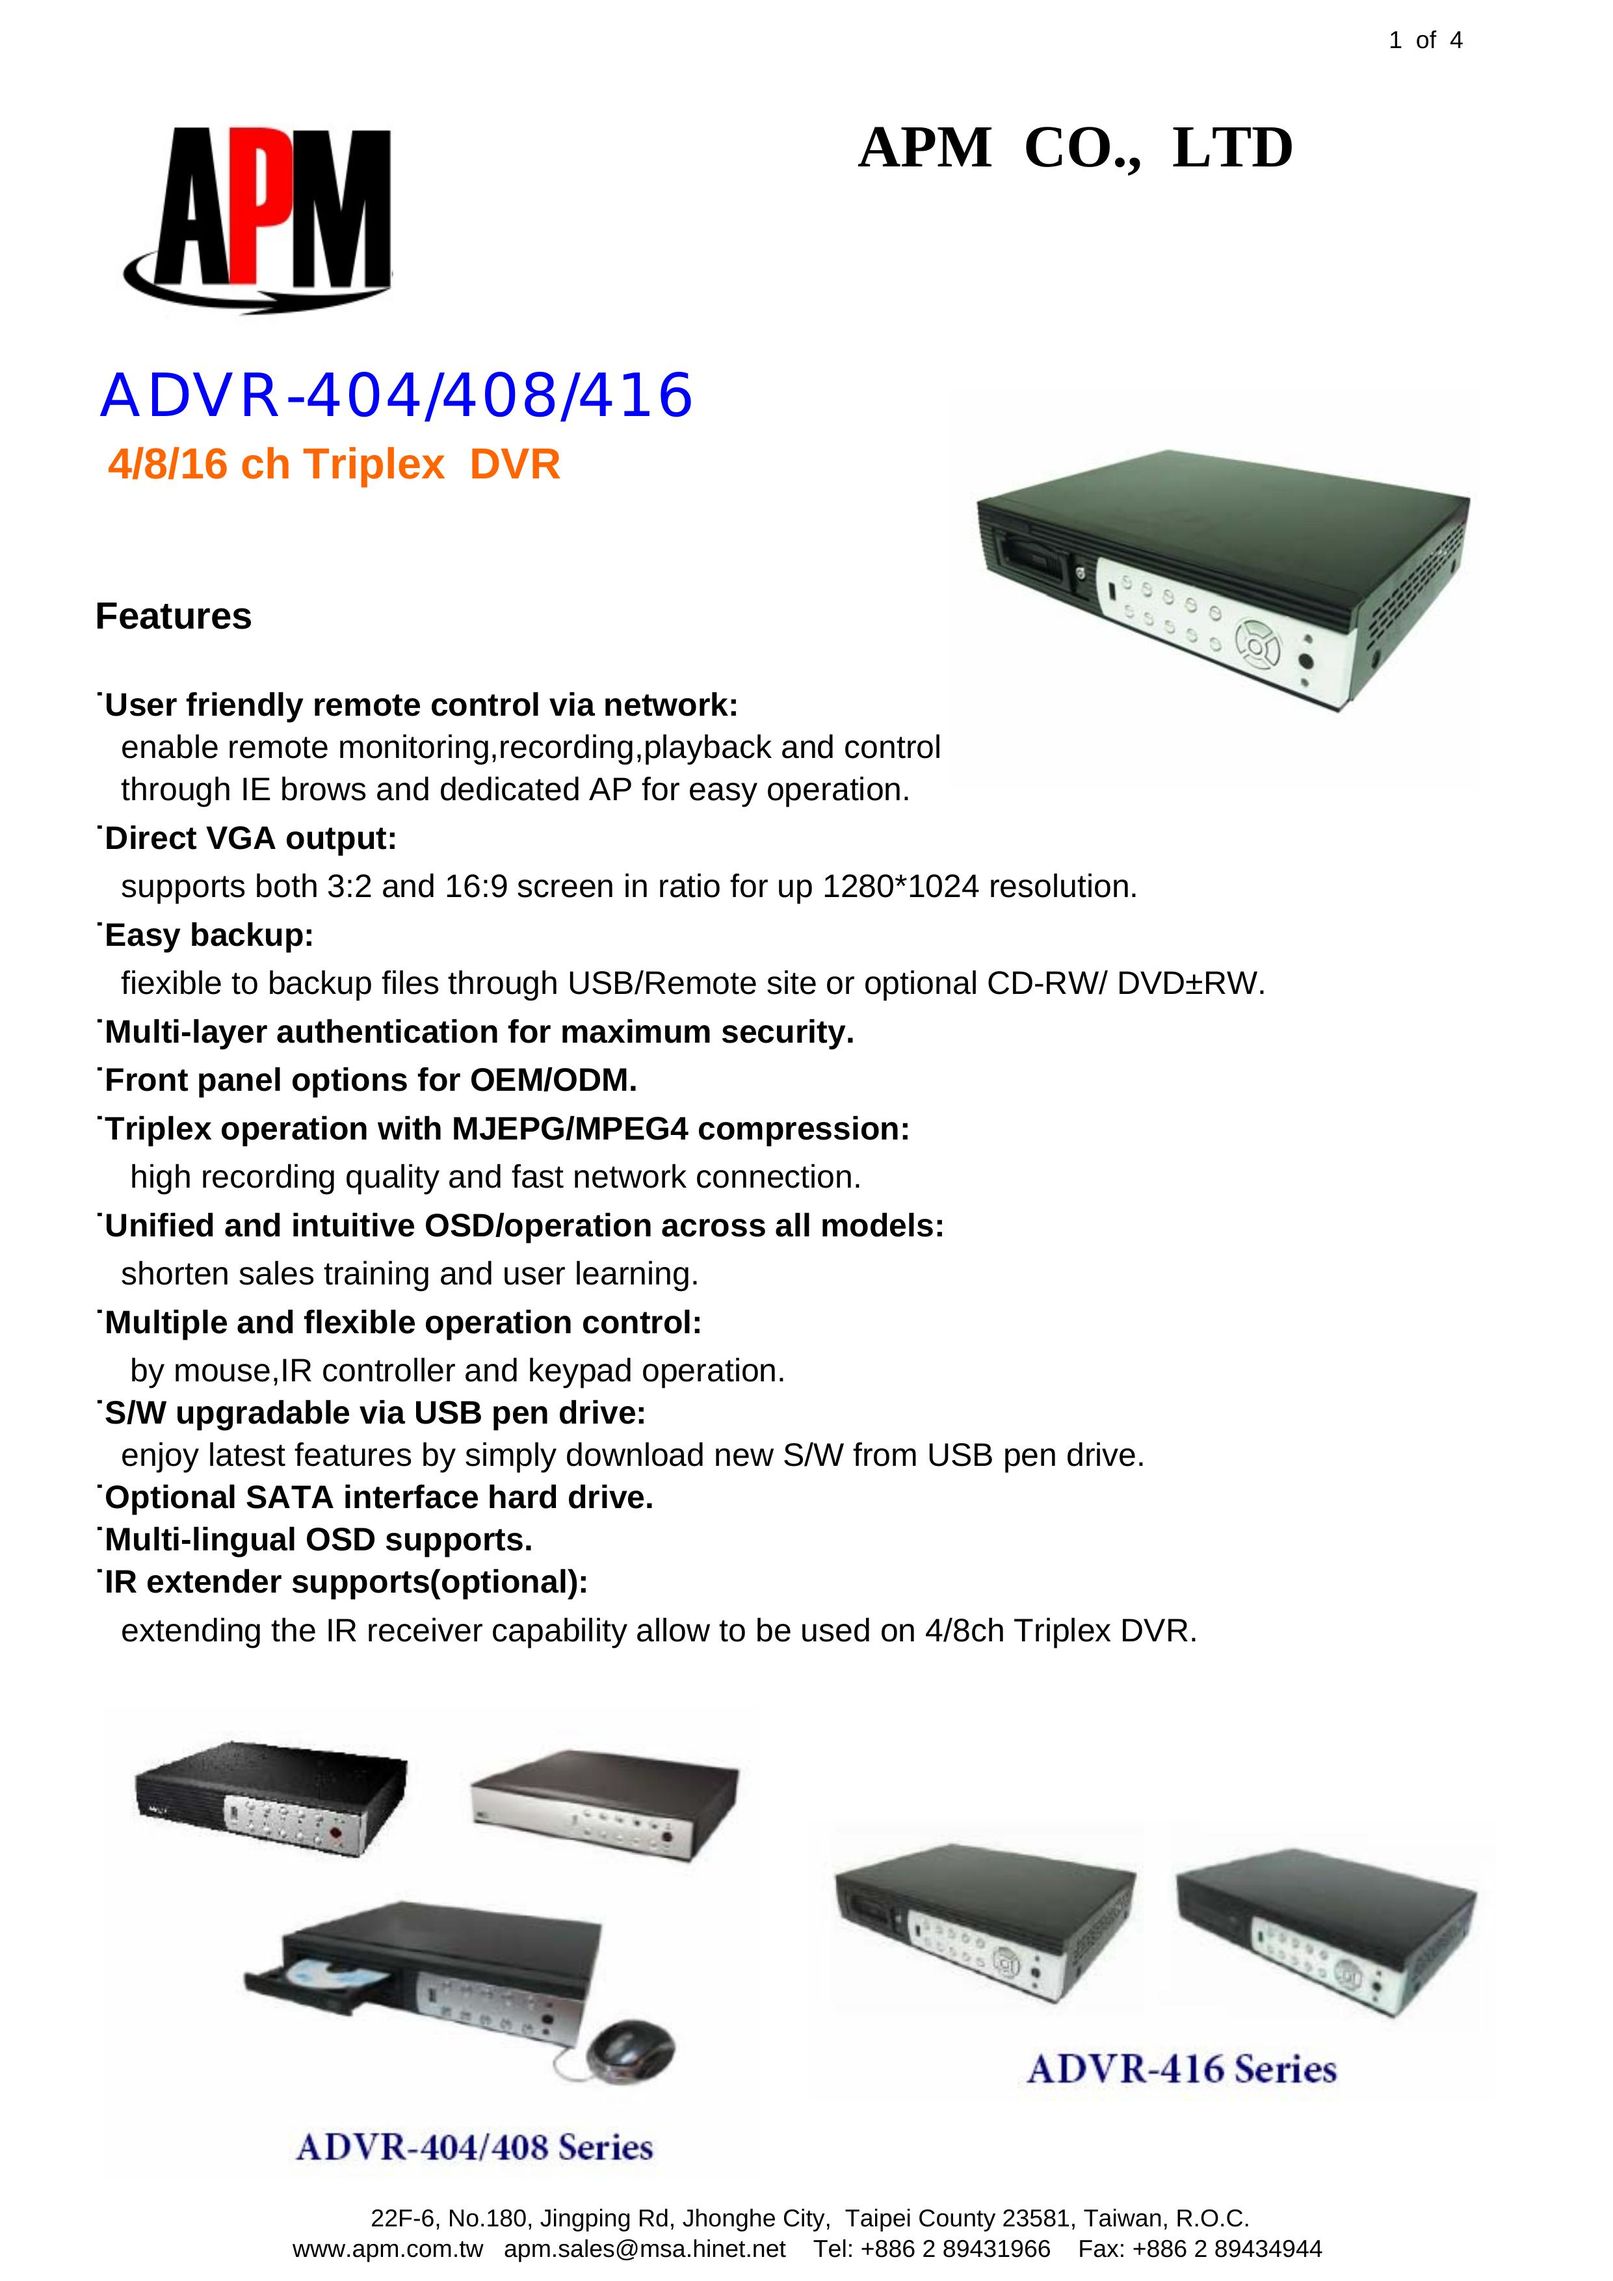 APM ADVR-416 DVR User Manual